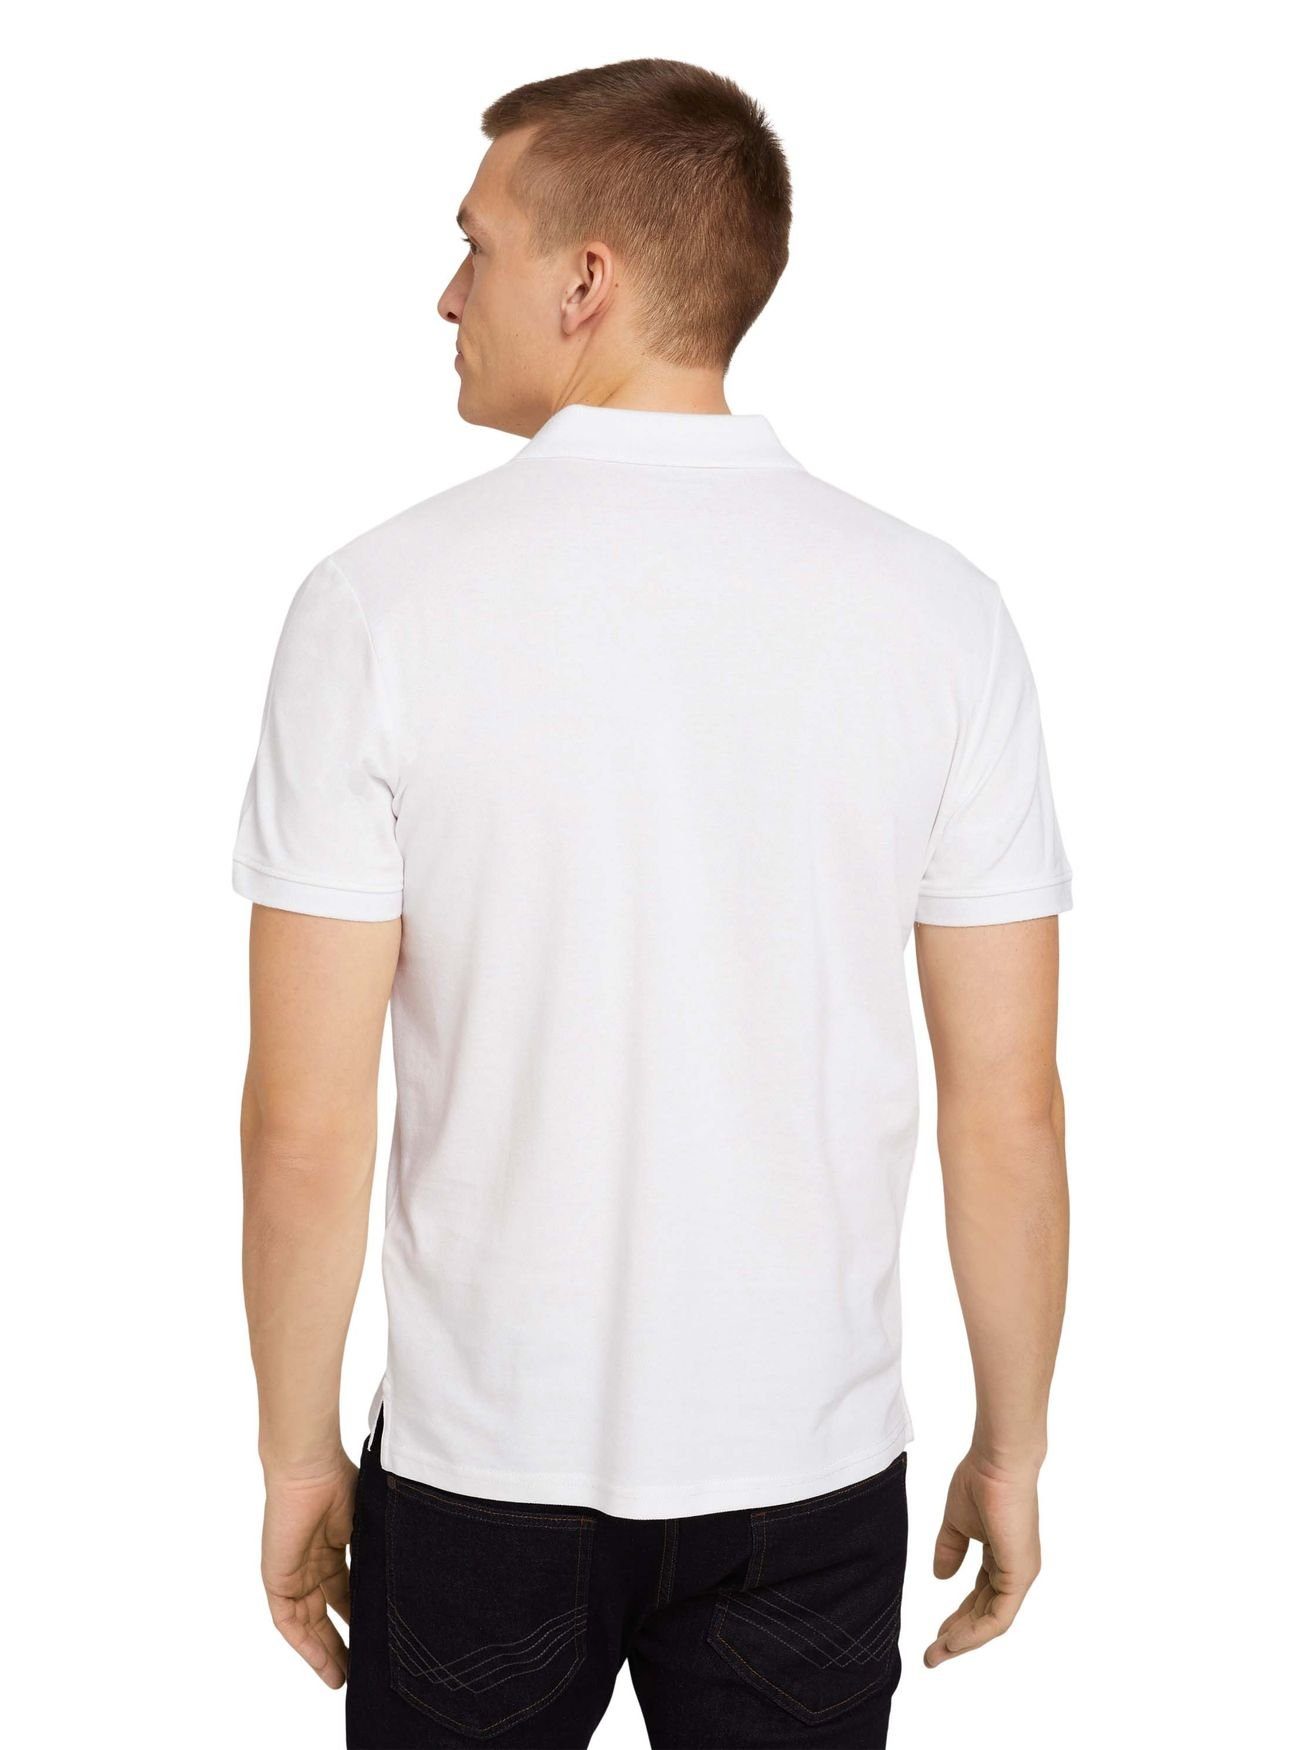 Poloshirt TAILOR TOM in Polo BASIC 5339 POLO Shirt Weiß